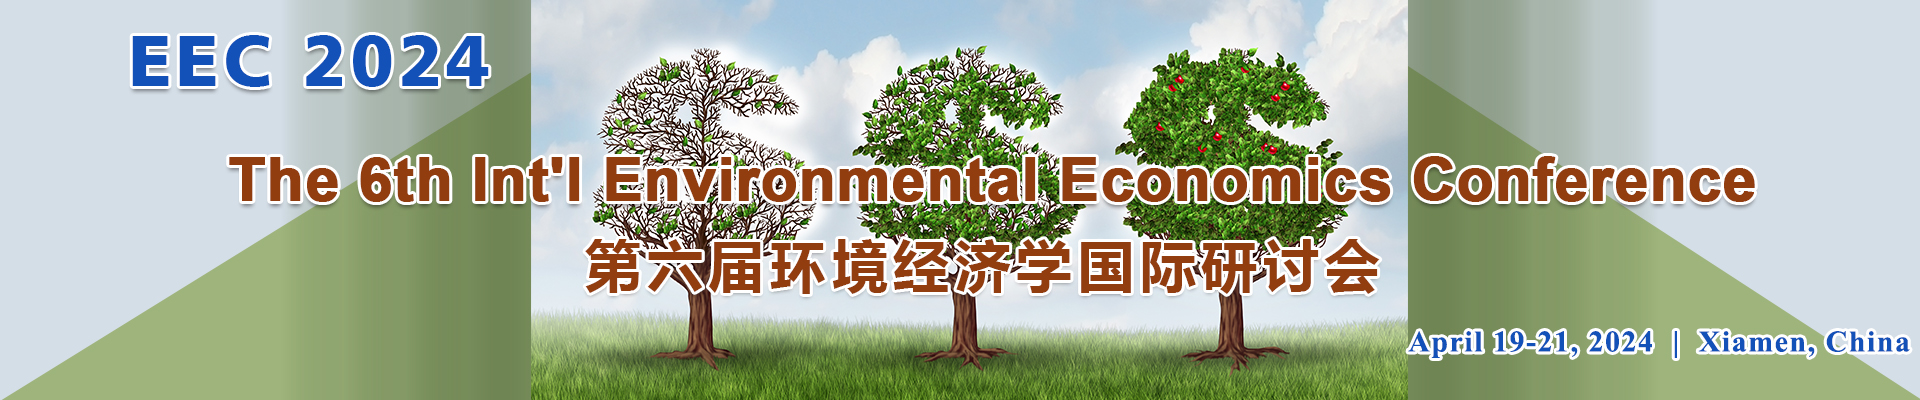 The 6th Int'l Environmental Economics Conference (EEC 2024), Xiamen, Fujian, China